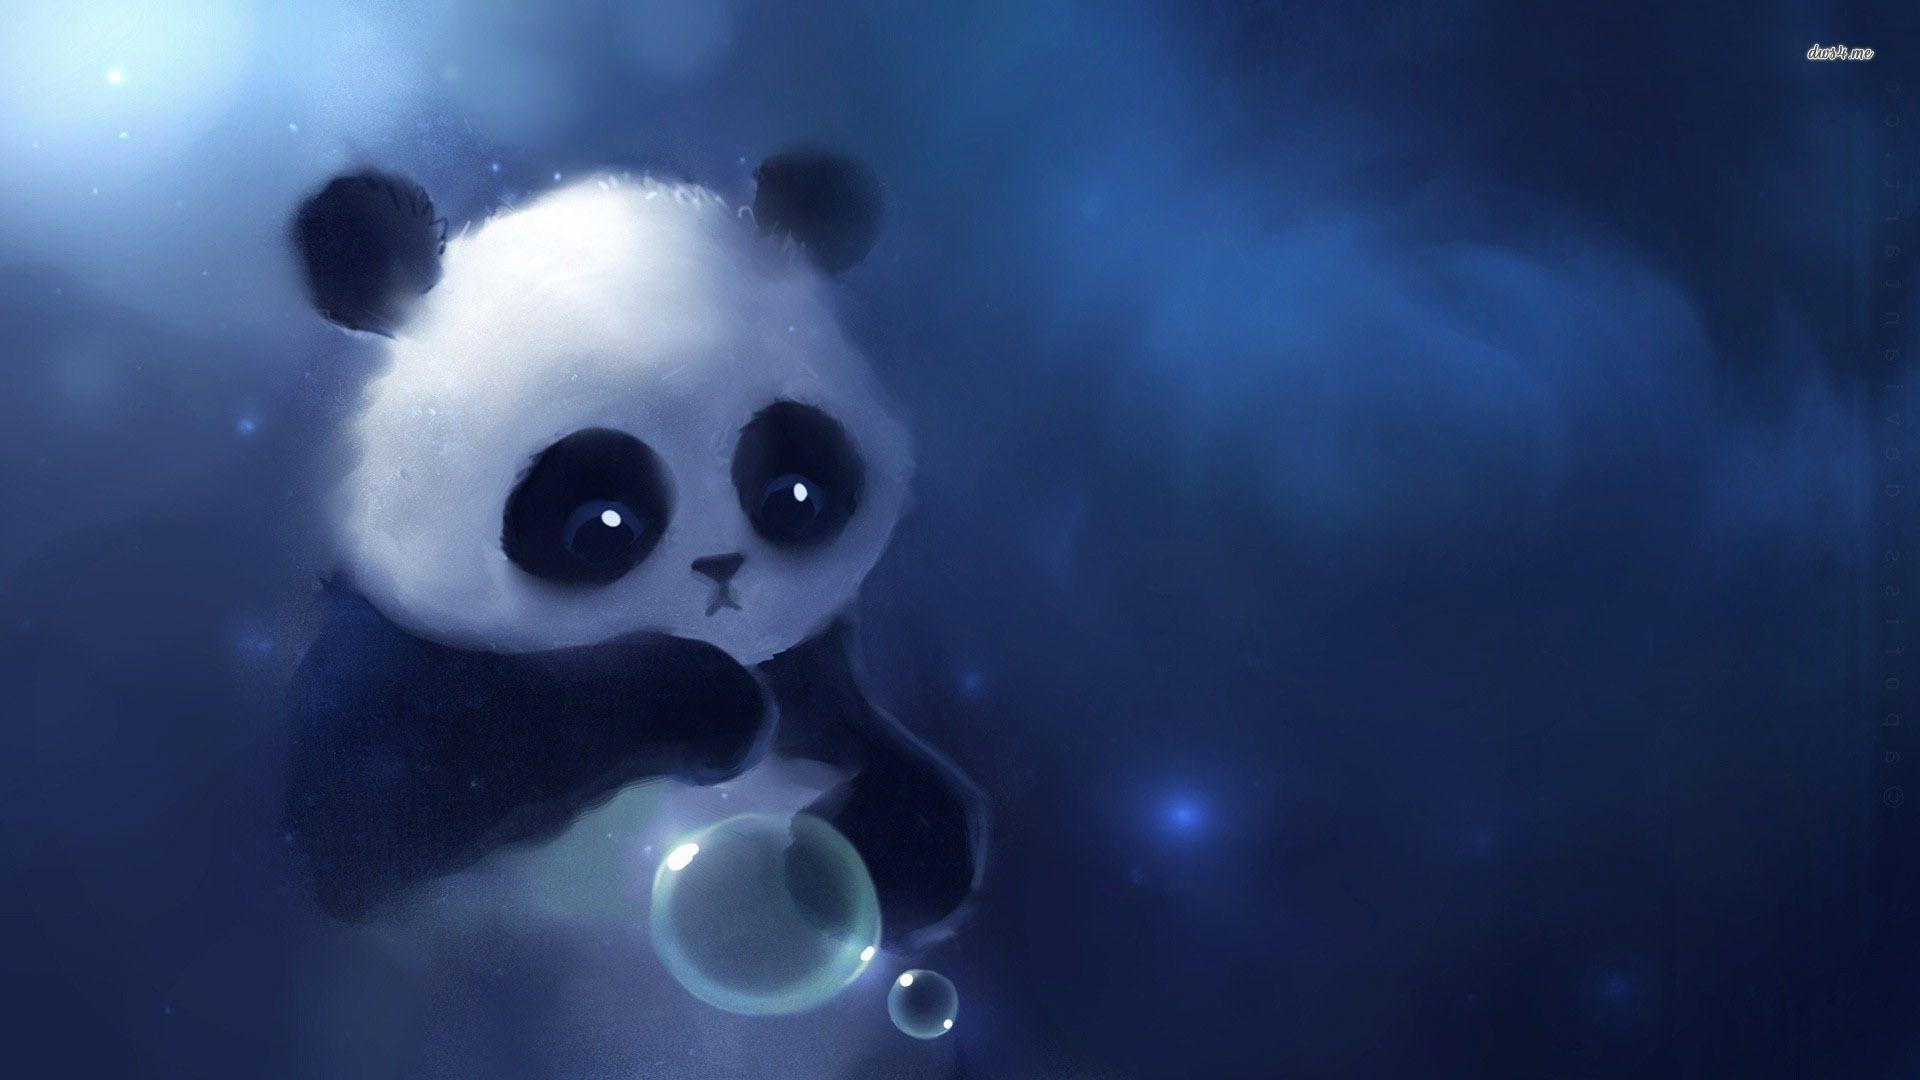 Small Cute Cartoon Panda Wallpapers Top Free Small Cute Cartoon Panda Backgrounds Wallpaperaccess